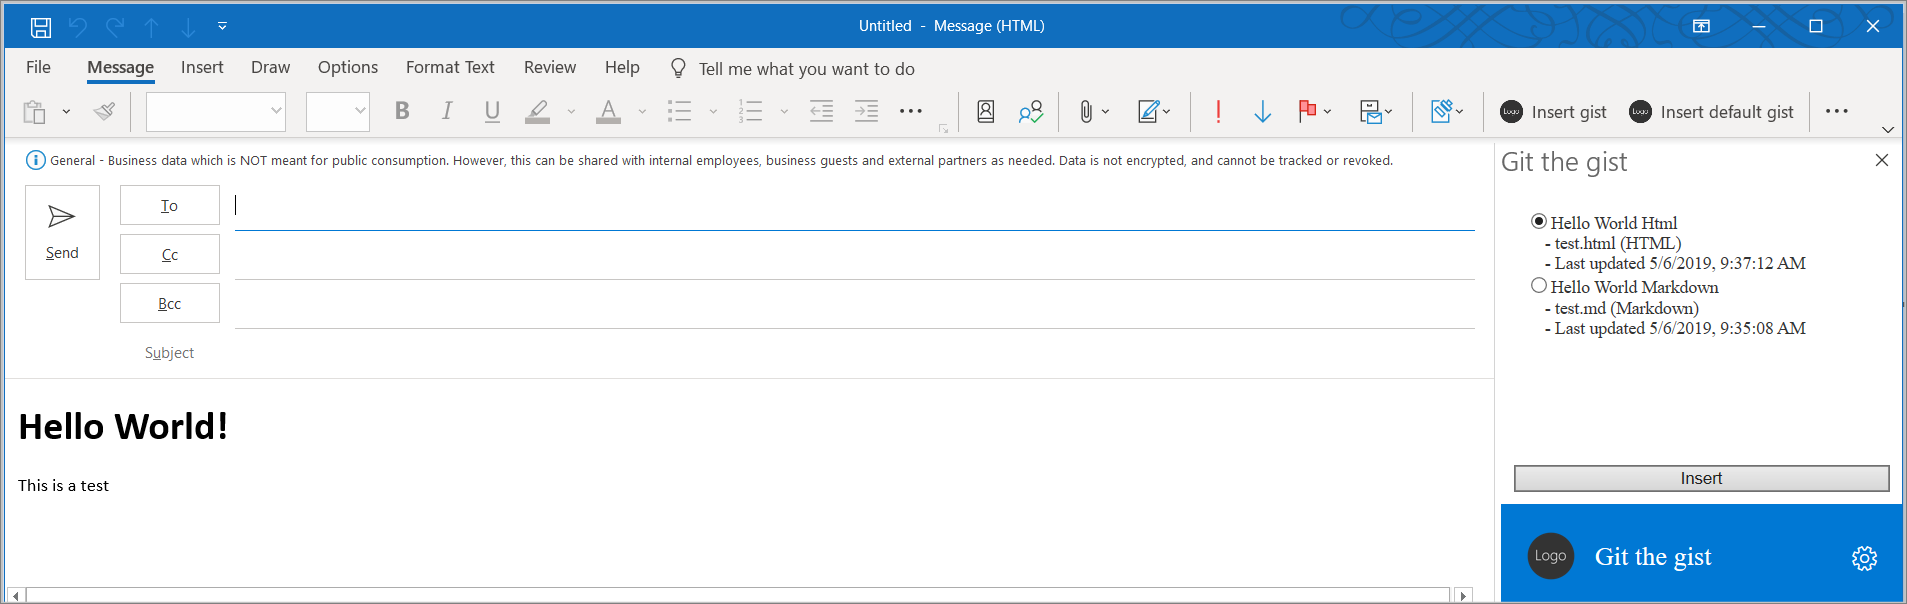 Captura de pantalla de la ventana de redacción de mensajes y el panel de tareas del complemento.